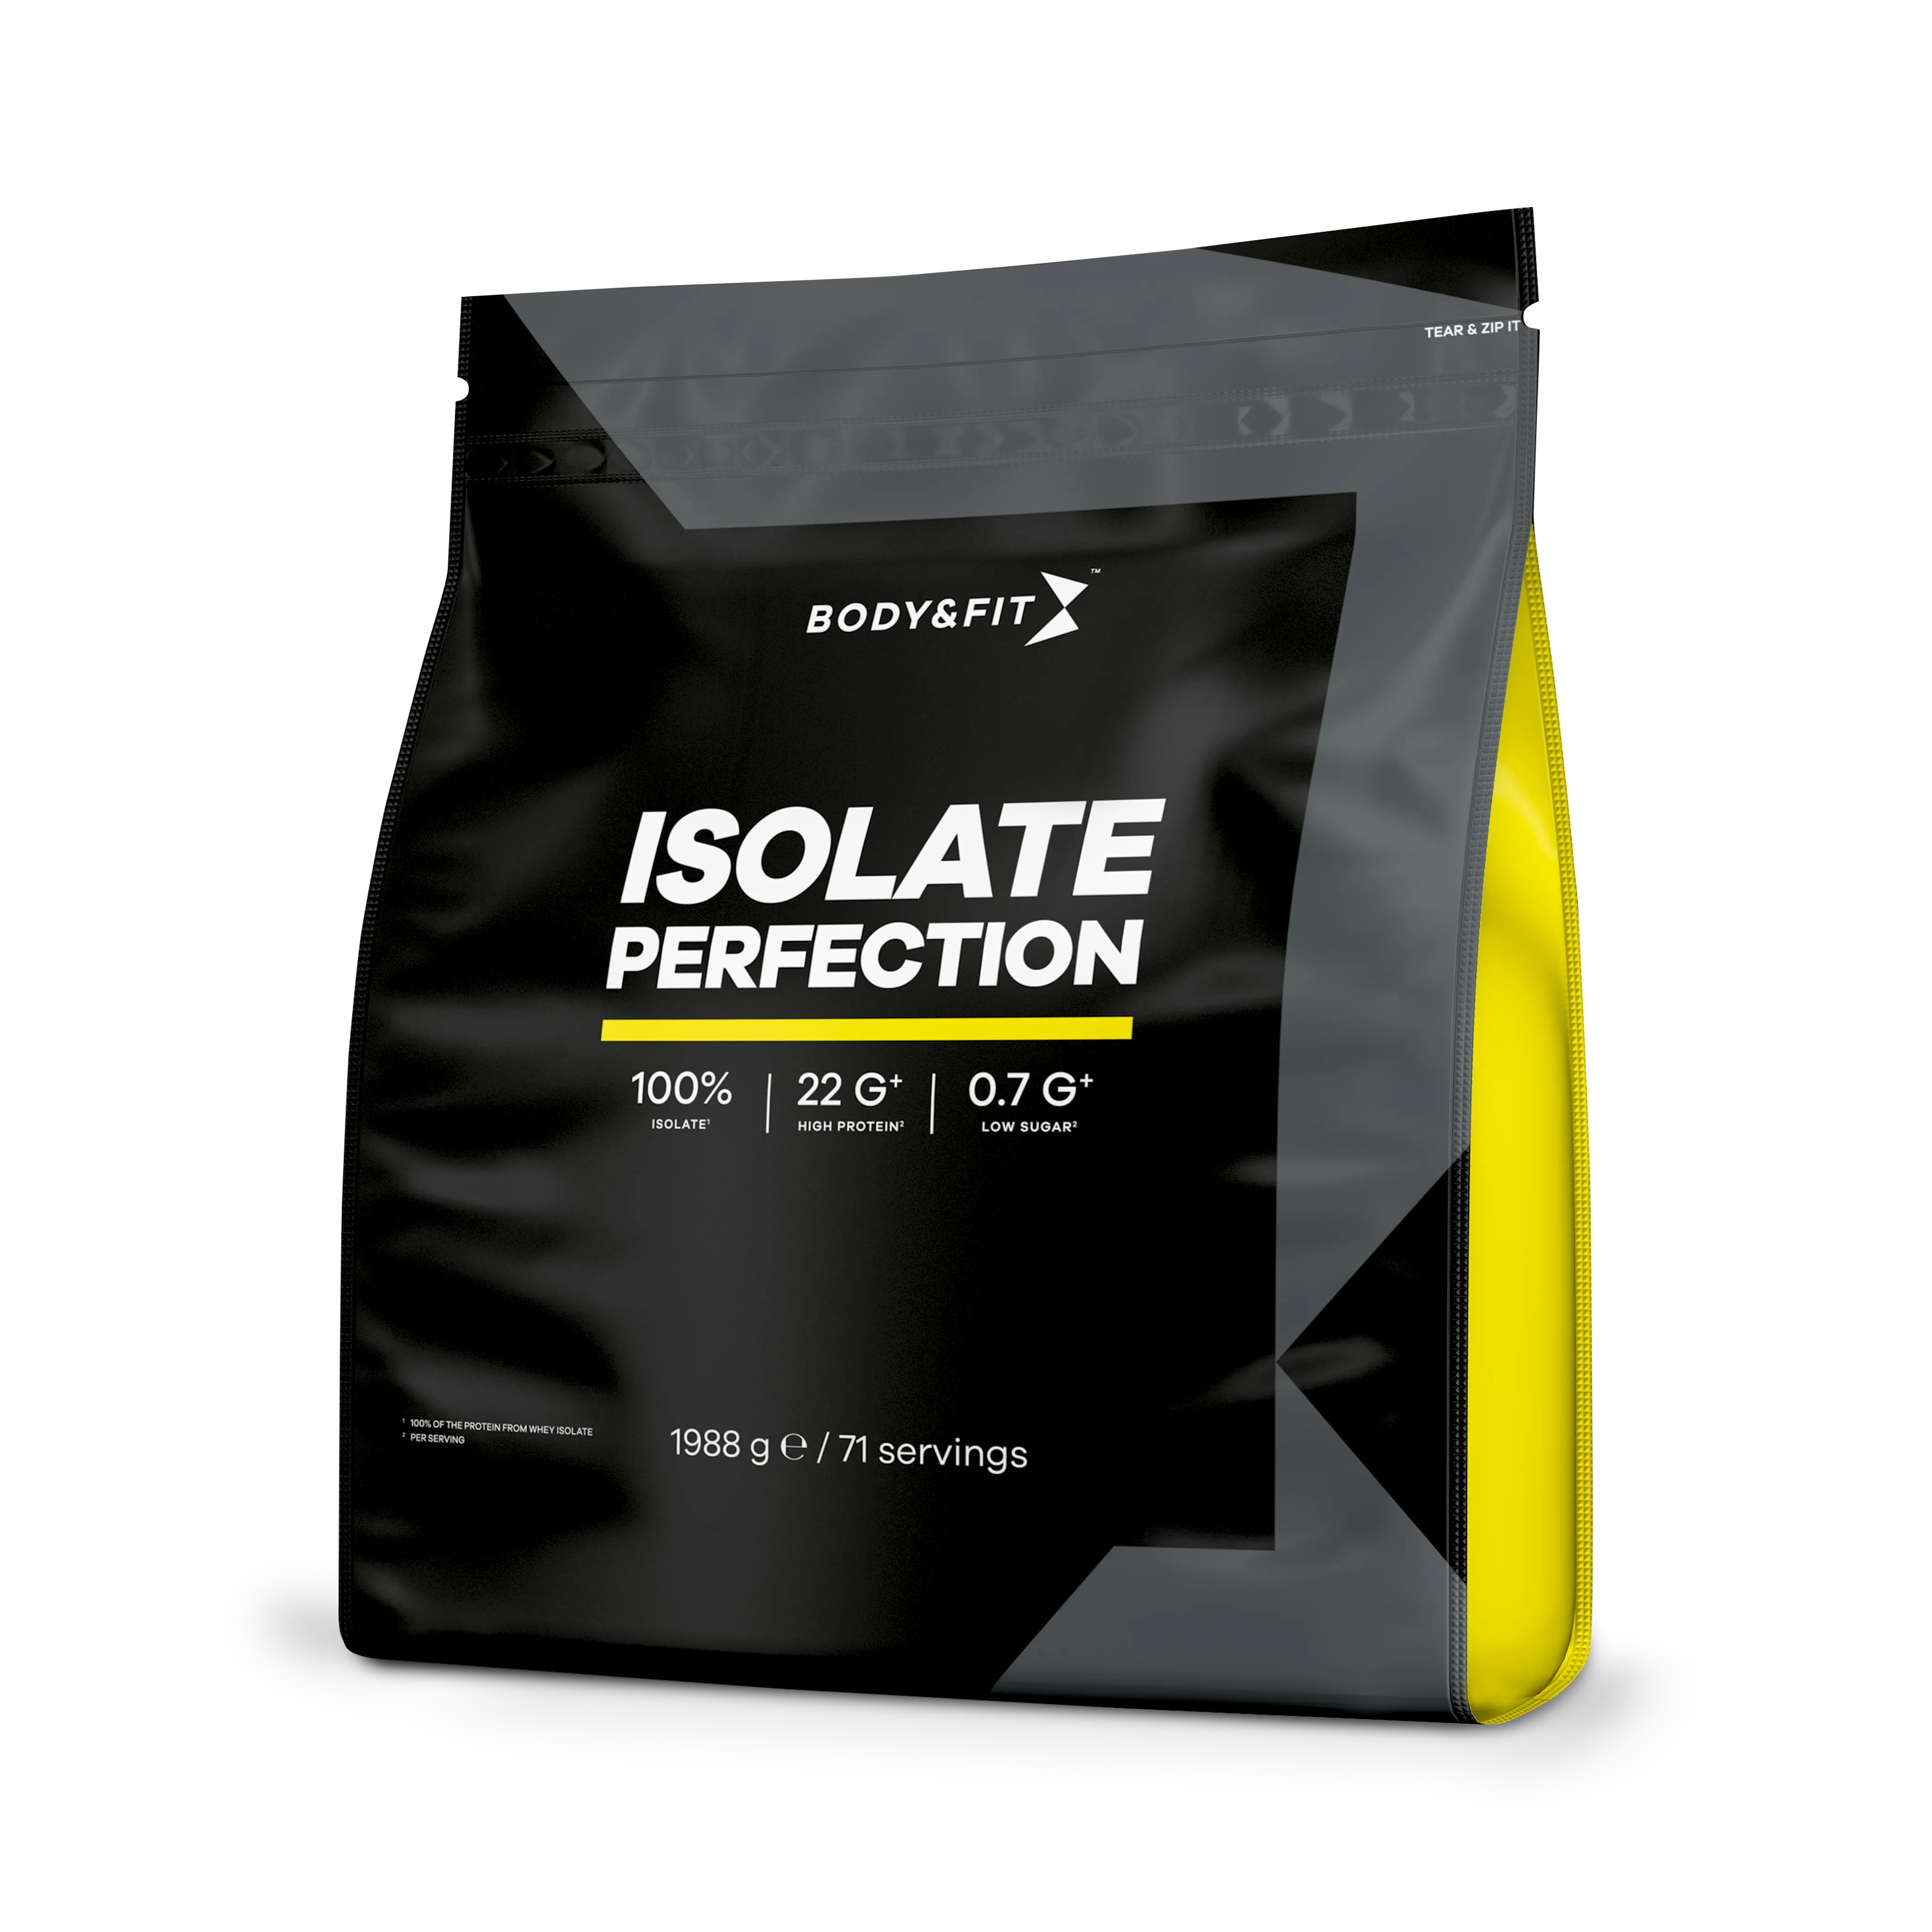 Isolate Perfection - Body&Fit - Sensazione Al Biscotto E Panna - 2 Kg (71 Frullati)